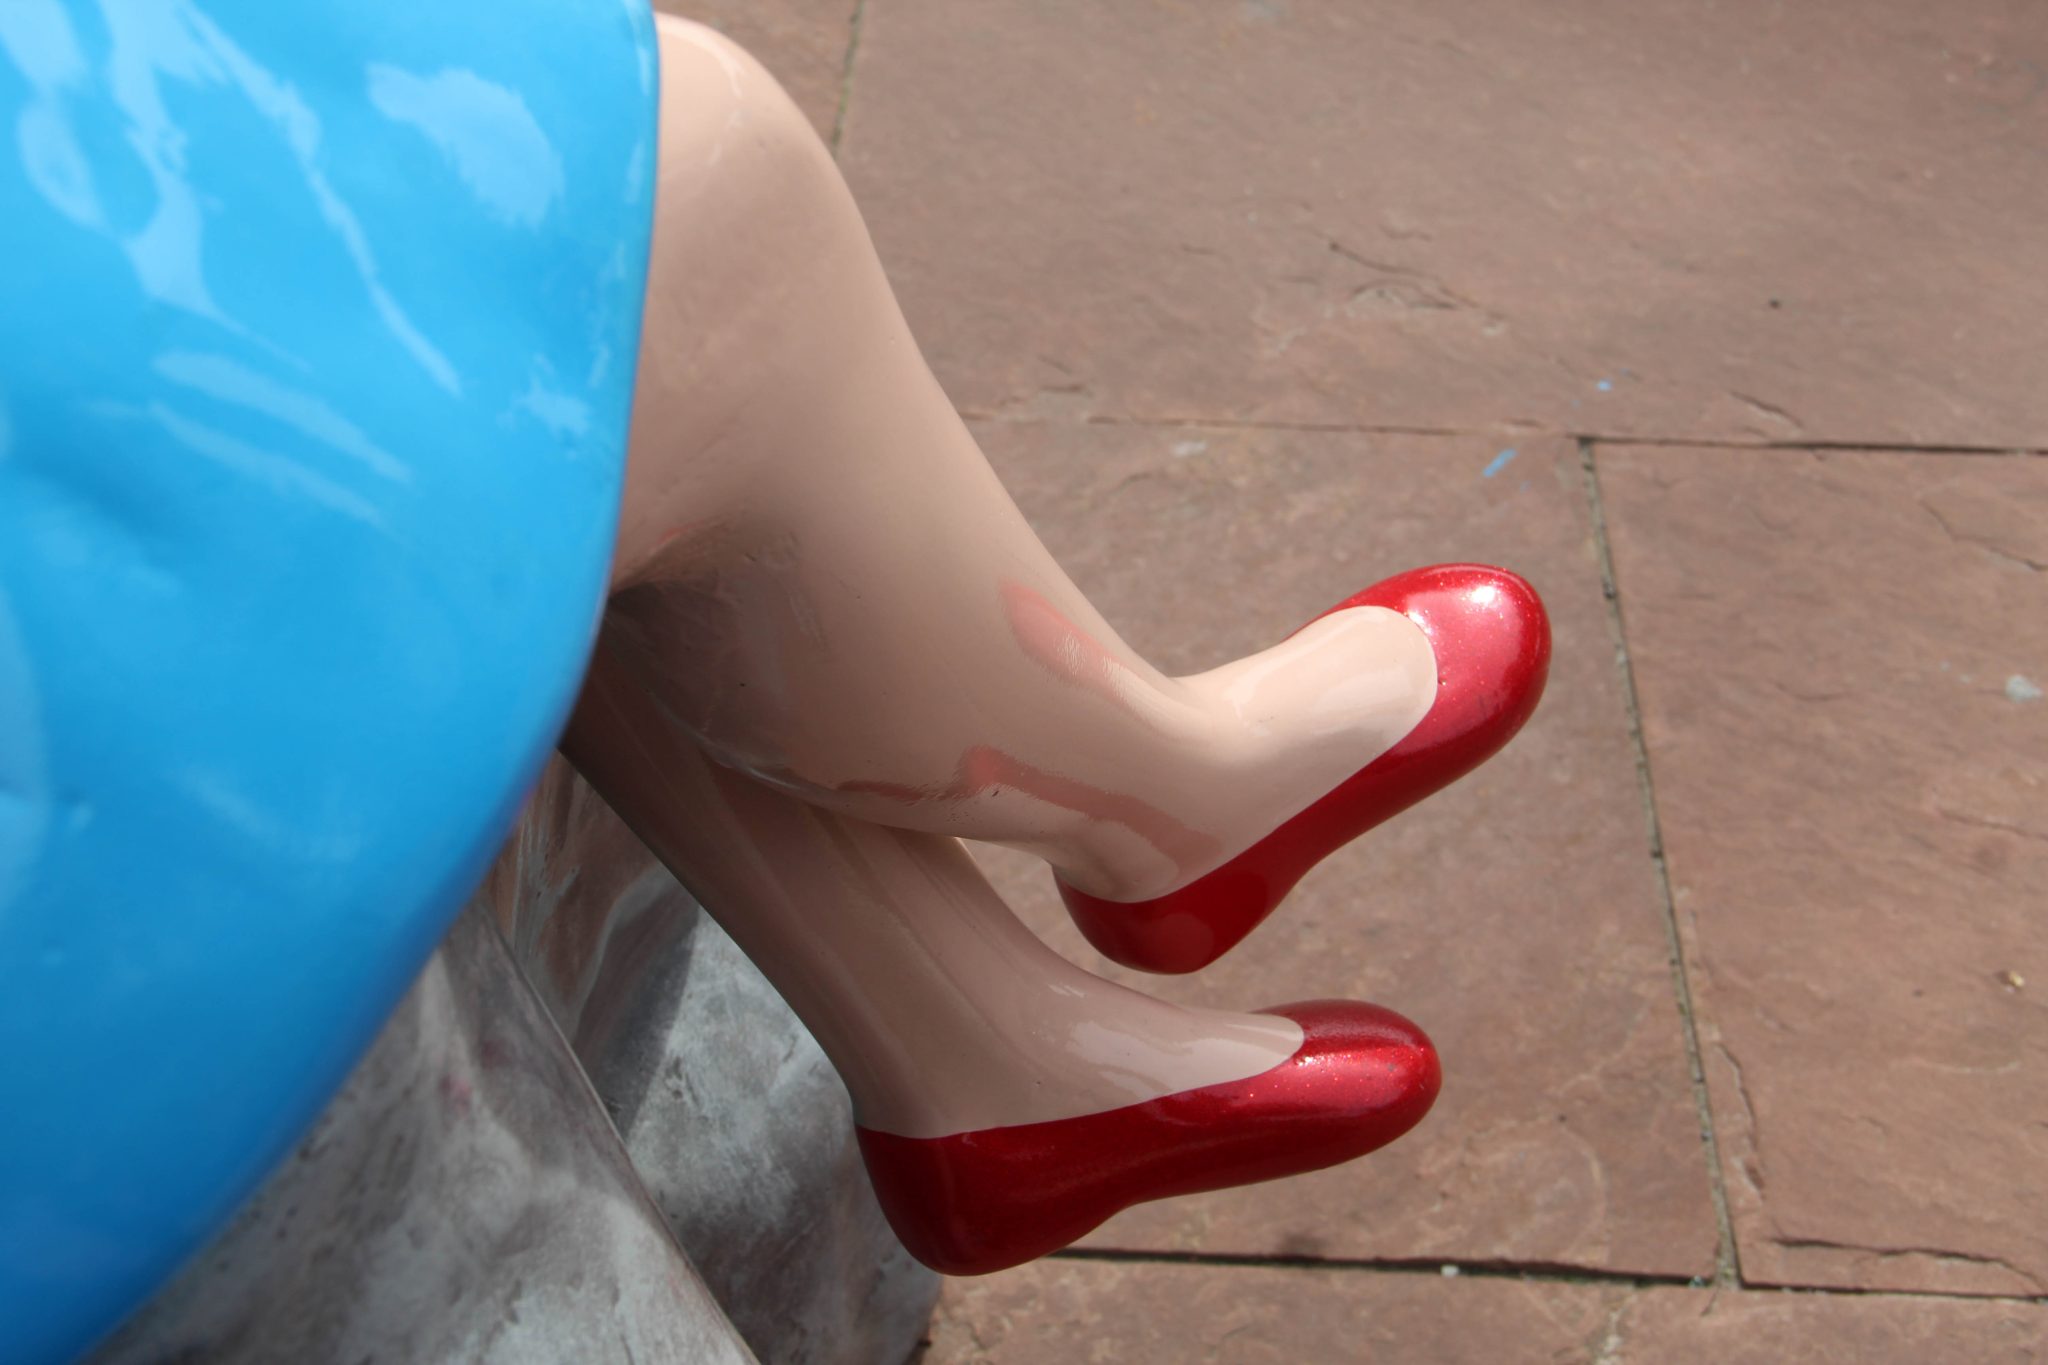 Shark Girl's feet. Shark Girl is a fiberglass sculpture in the Canalside area of Buffalo, New York.